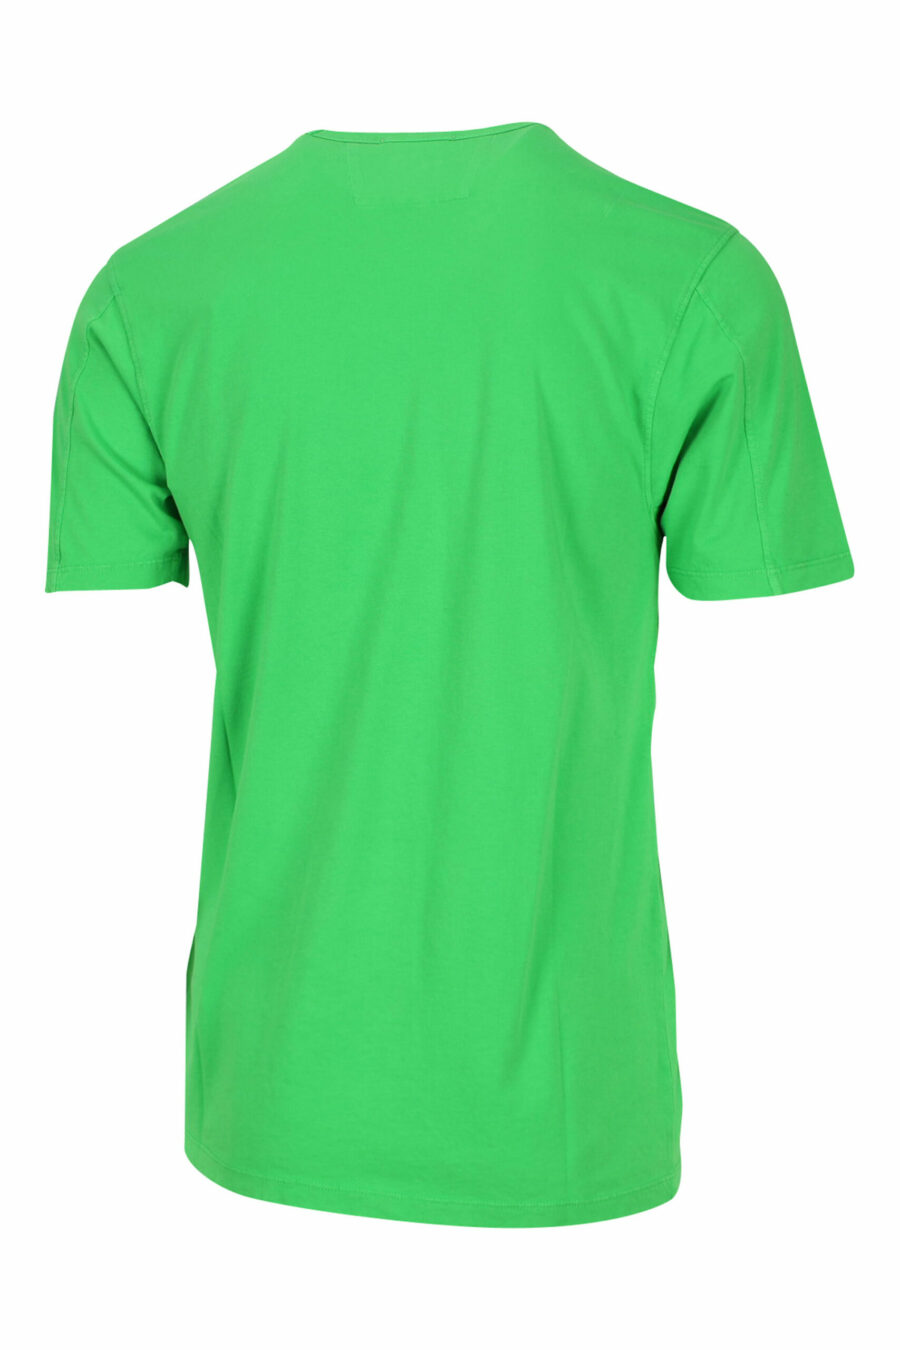 Camiseta verde con minilogo centrado - 7620943594997 1 scaled